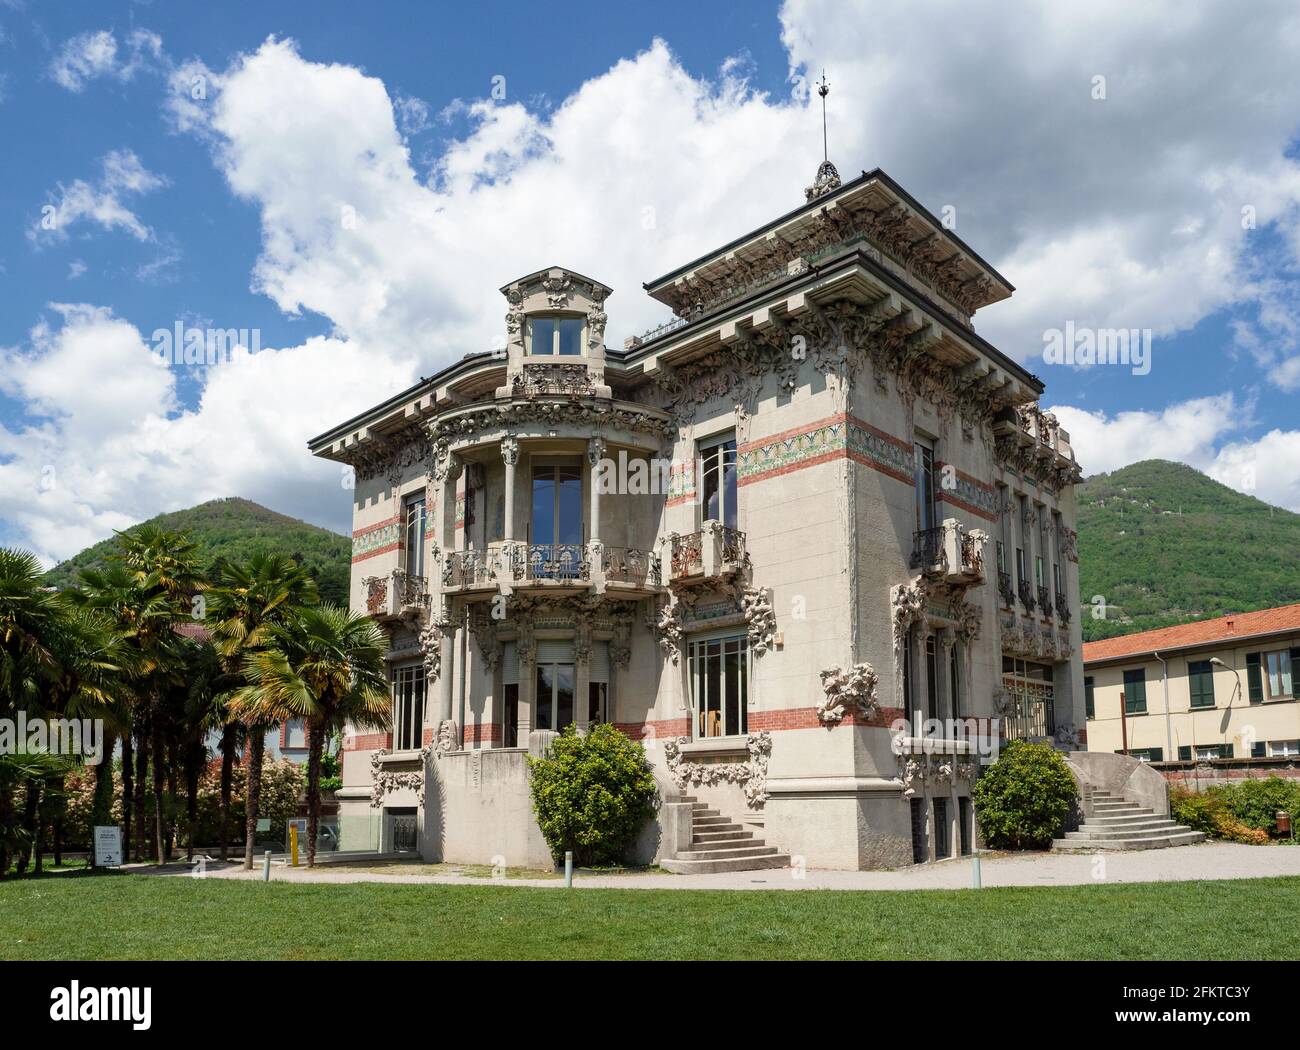 Villa di lusso in stile Liberty a Cernobbio.Como lago, Lombardia, Italia  Foto stock - Alamy